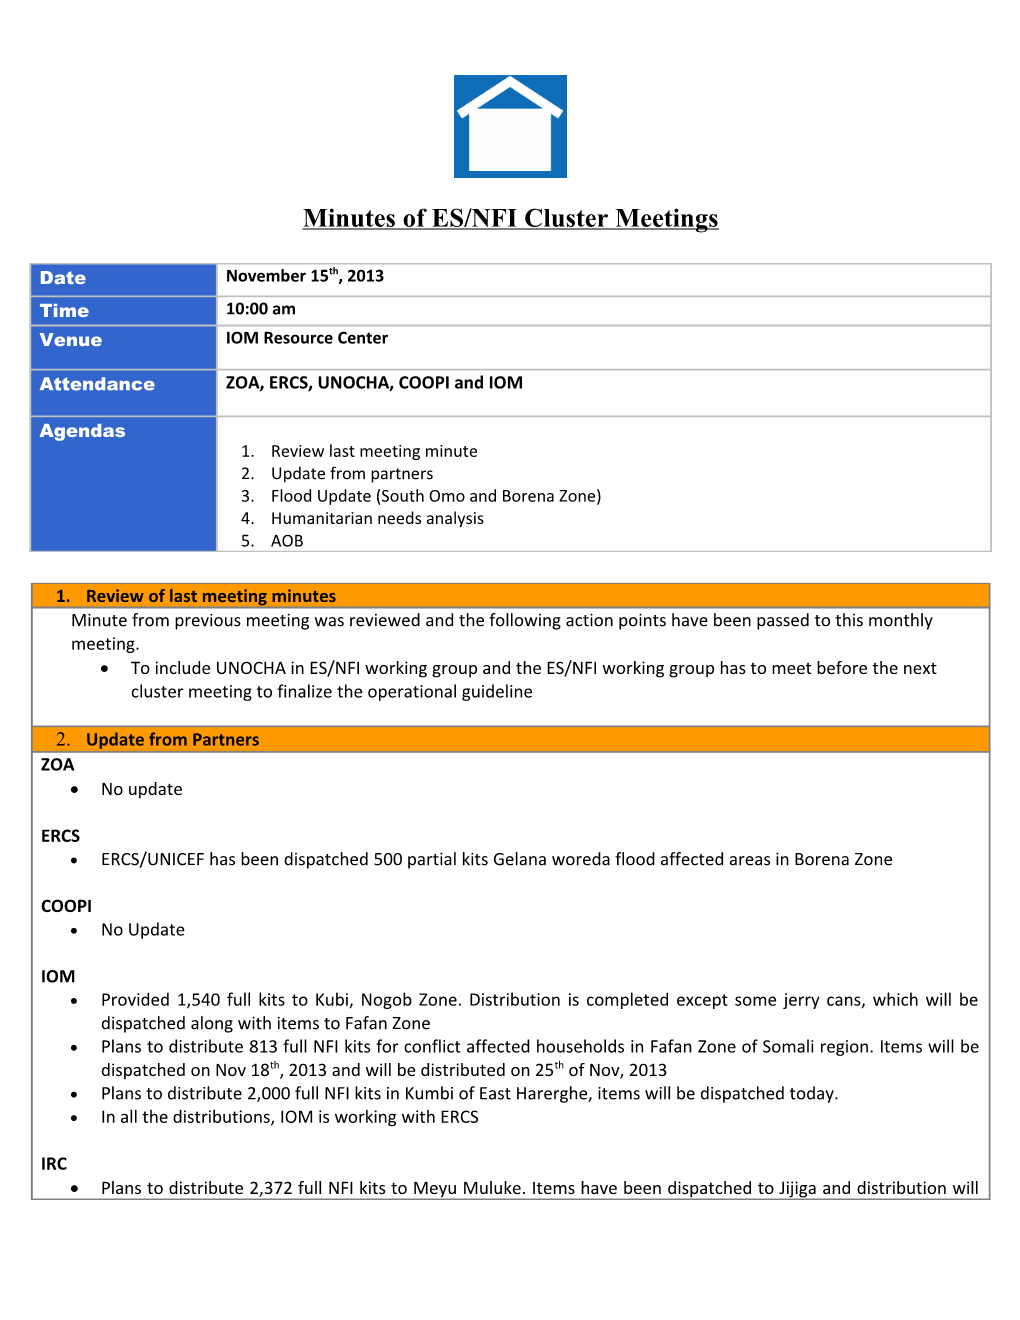 Minutes of ES/NFI Cluster Meetings s1